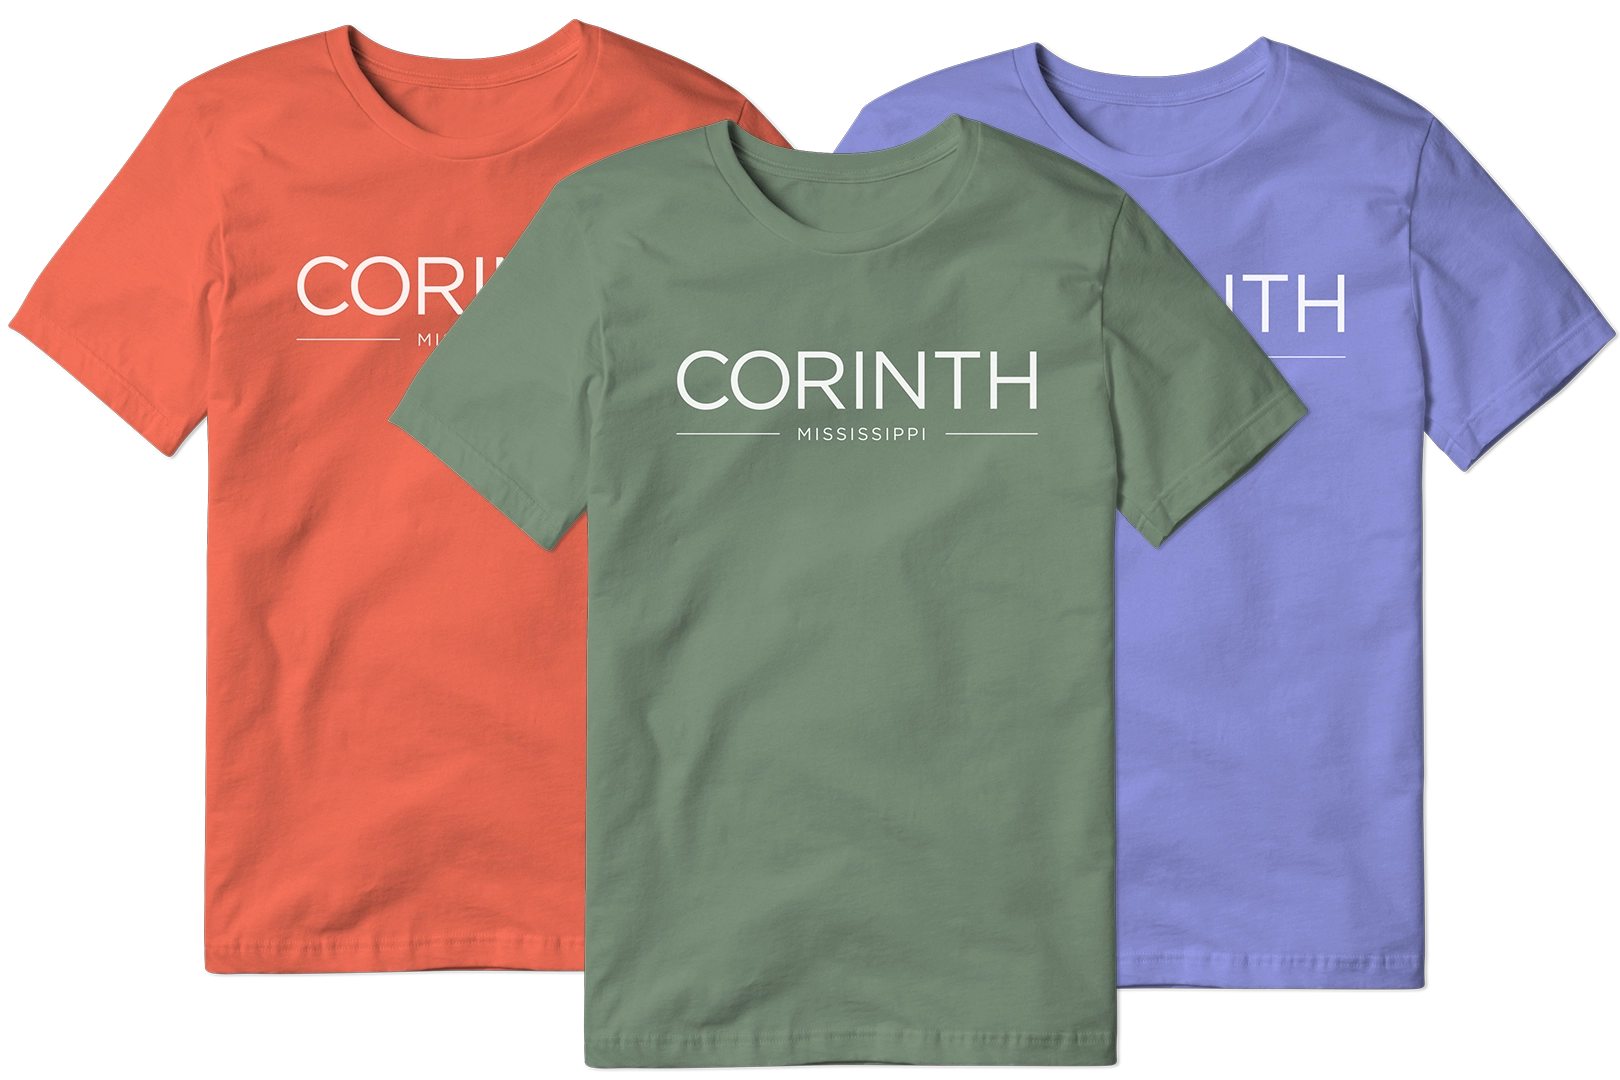 CORINTH spread